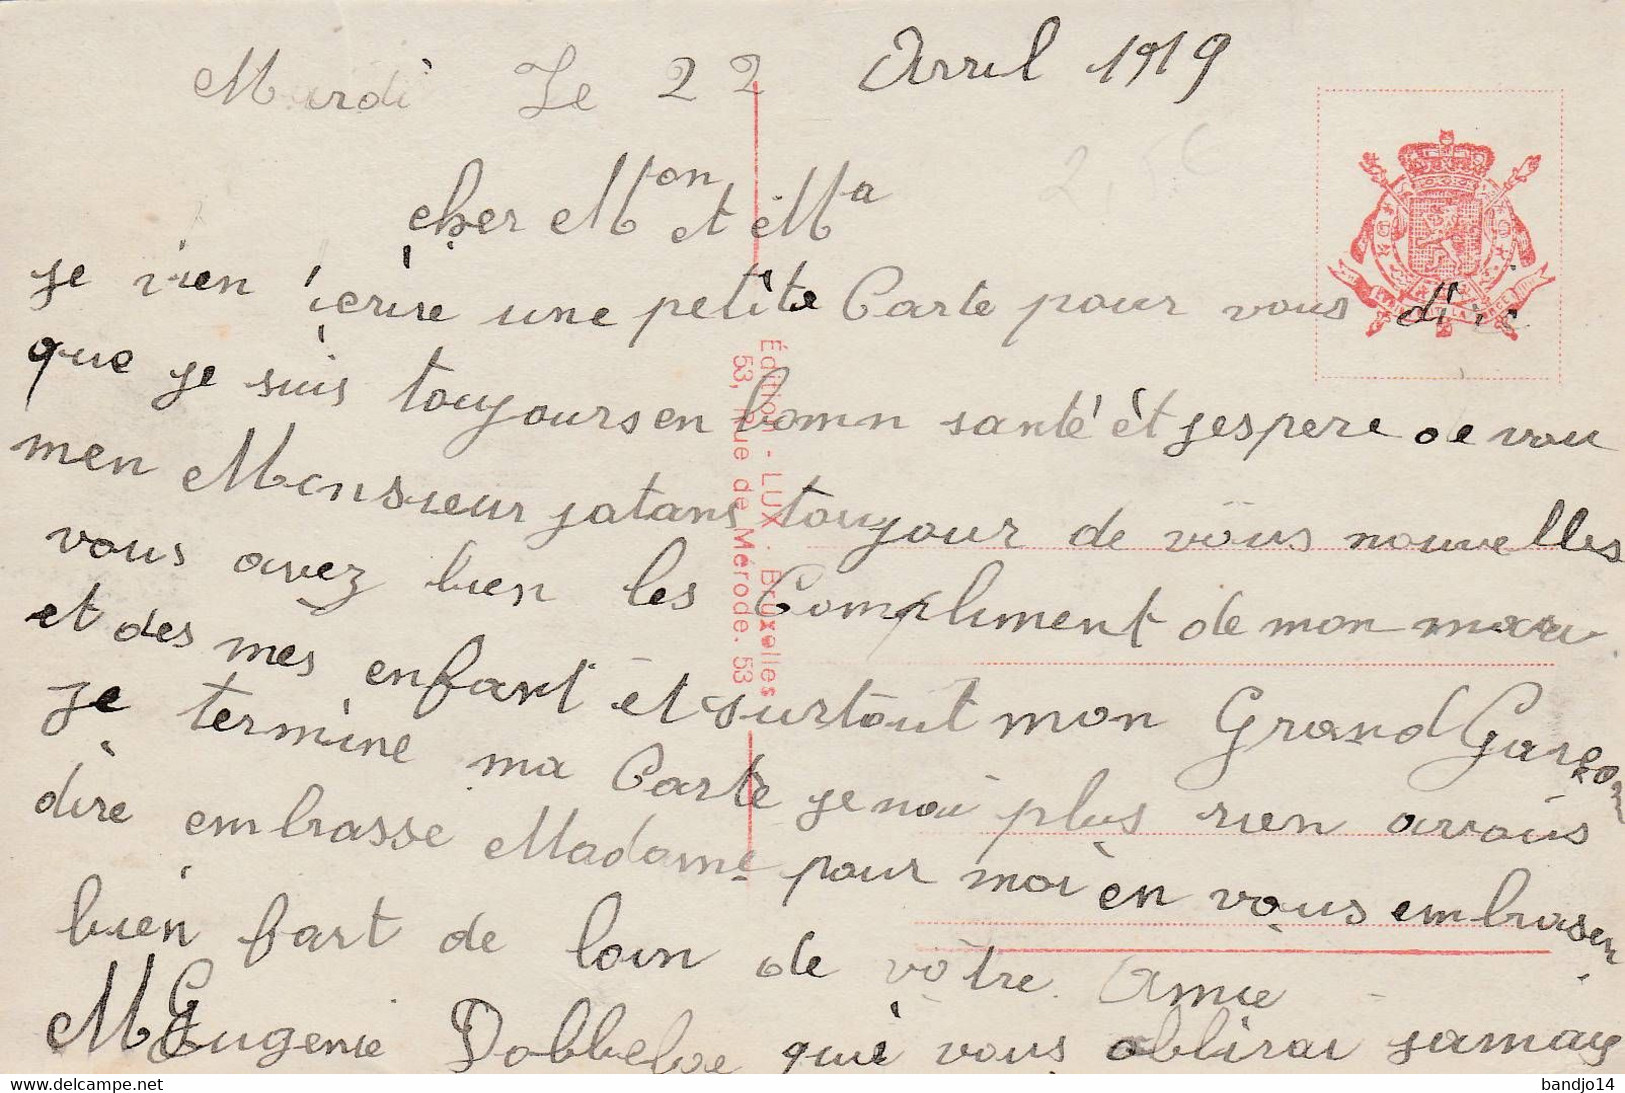 1918 - Entrée De La Famille Royale Et Des Troupes Alliées Le 22 Novembre    - Scan Recto-verso - Feiern, Ereignisse